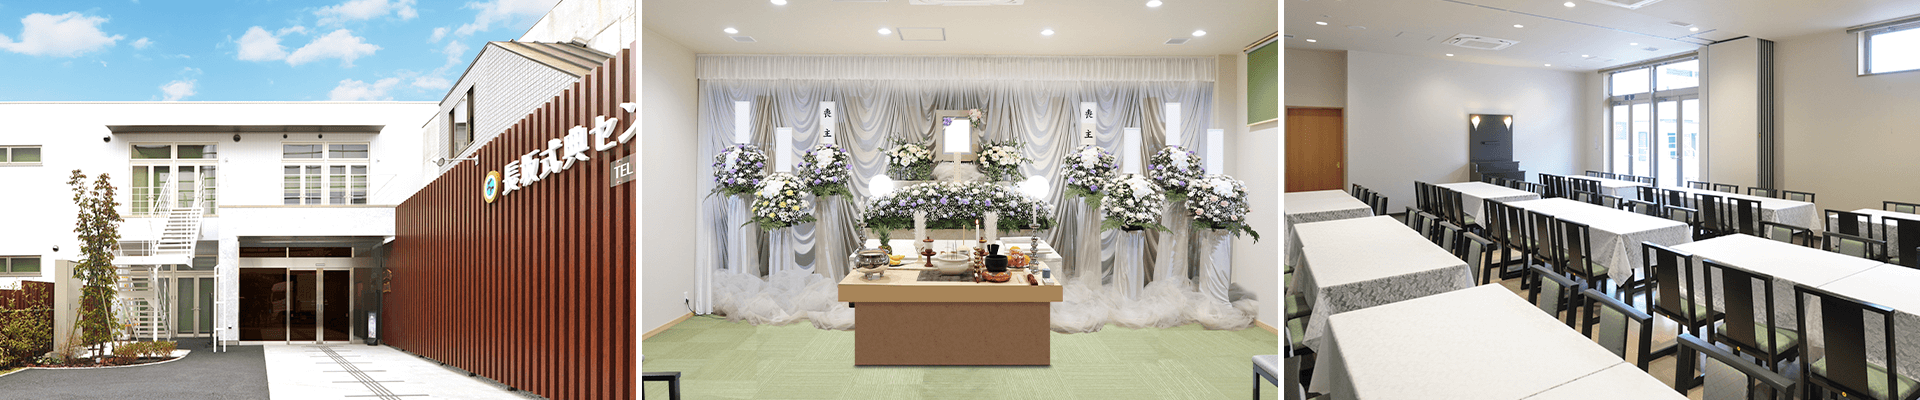 葬儀・葬式・家族葬なら16.5万円からできる長坂式典センター 国分寺市の葬儀場一覧